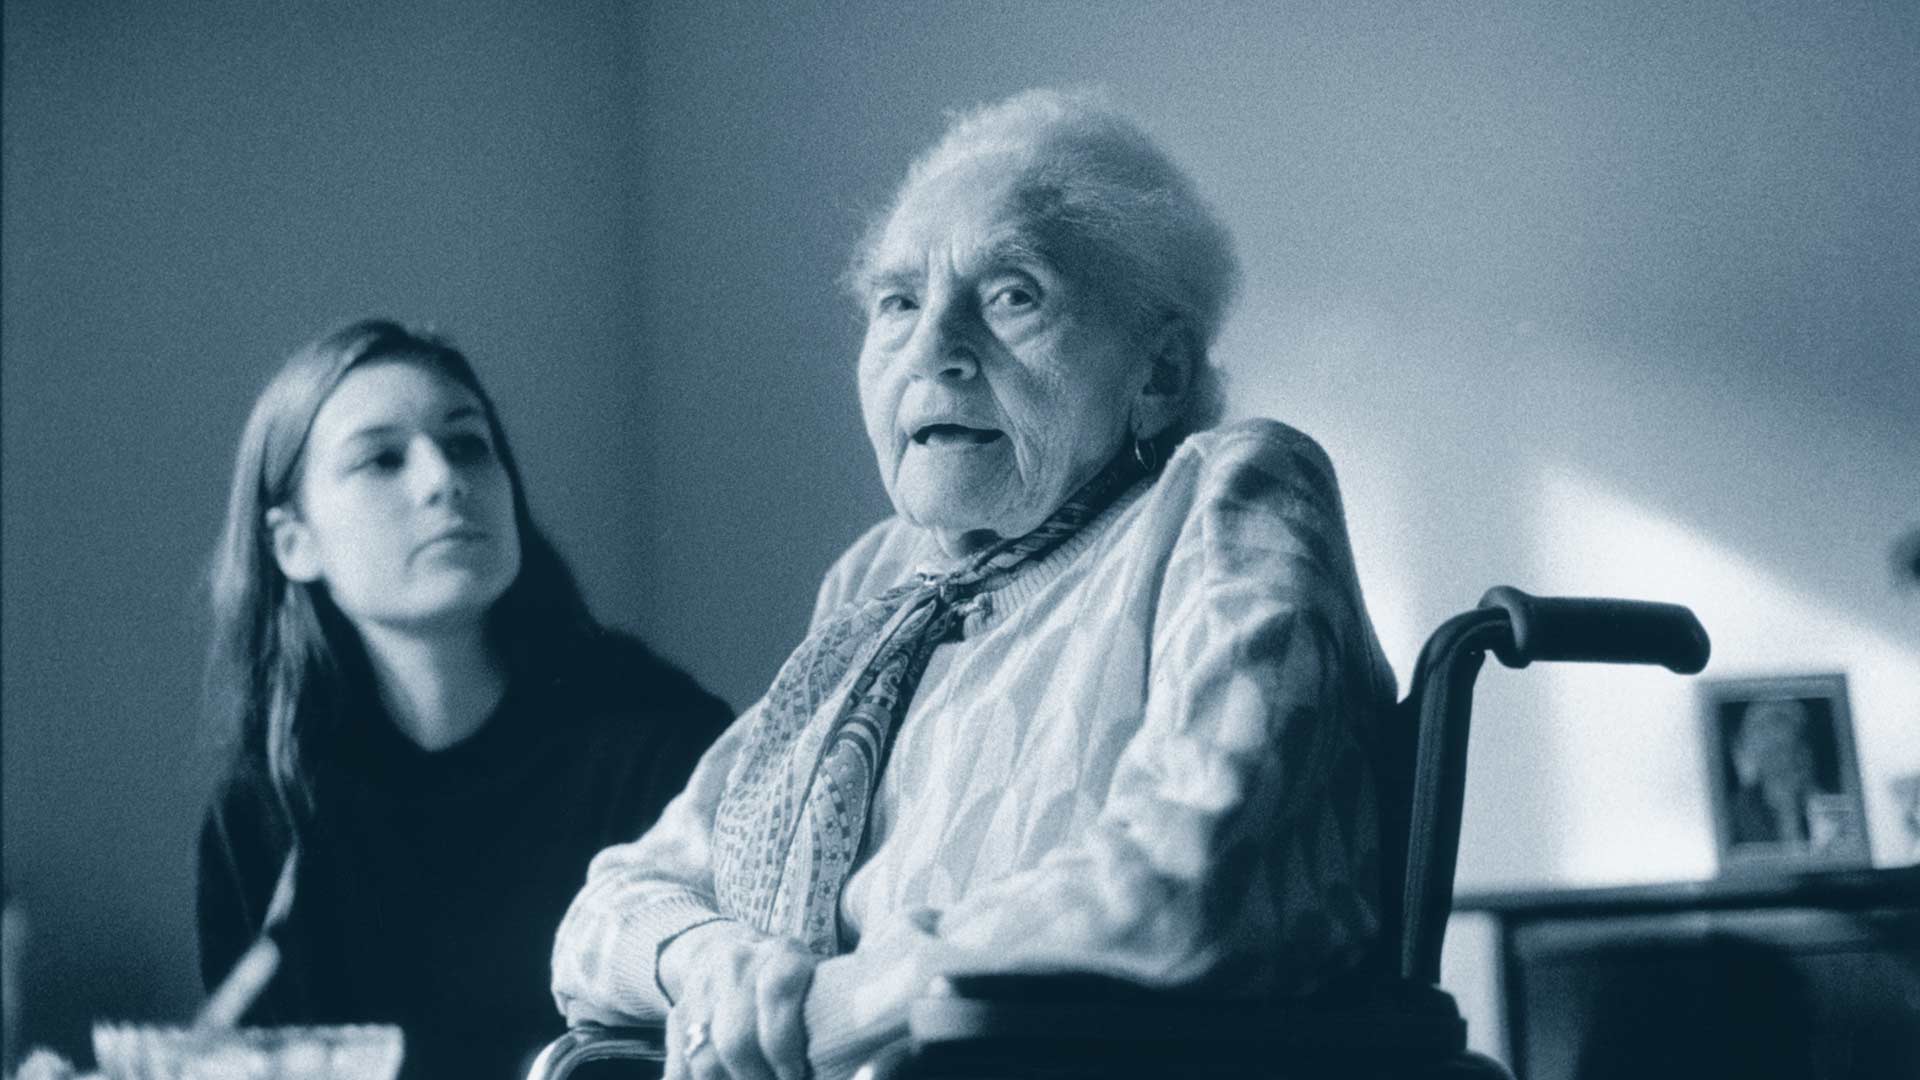 Im Vordergrund schaut eine ältere Frau in die Kamera, der Mund ist leicht geöffnet. Im Hintergrund schaut eine junge Frau die ältere Dame an.